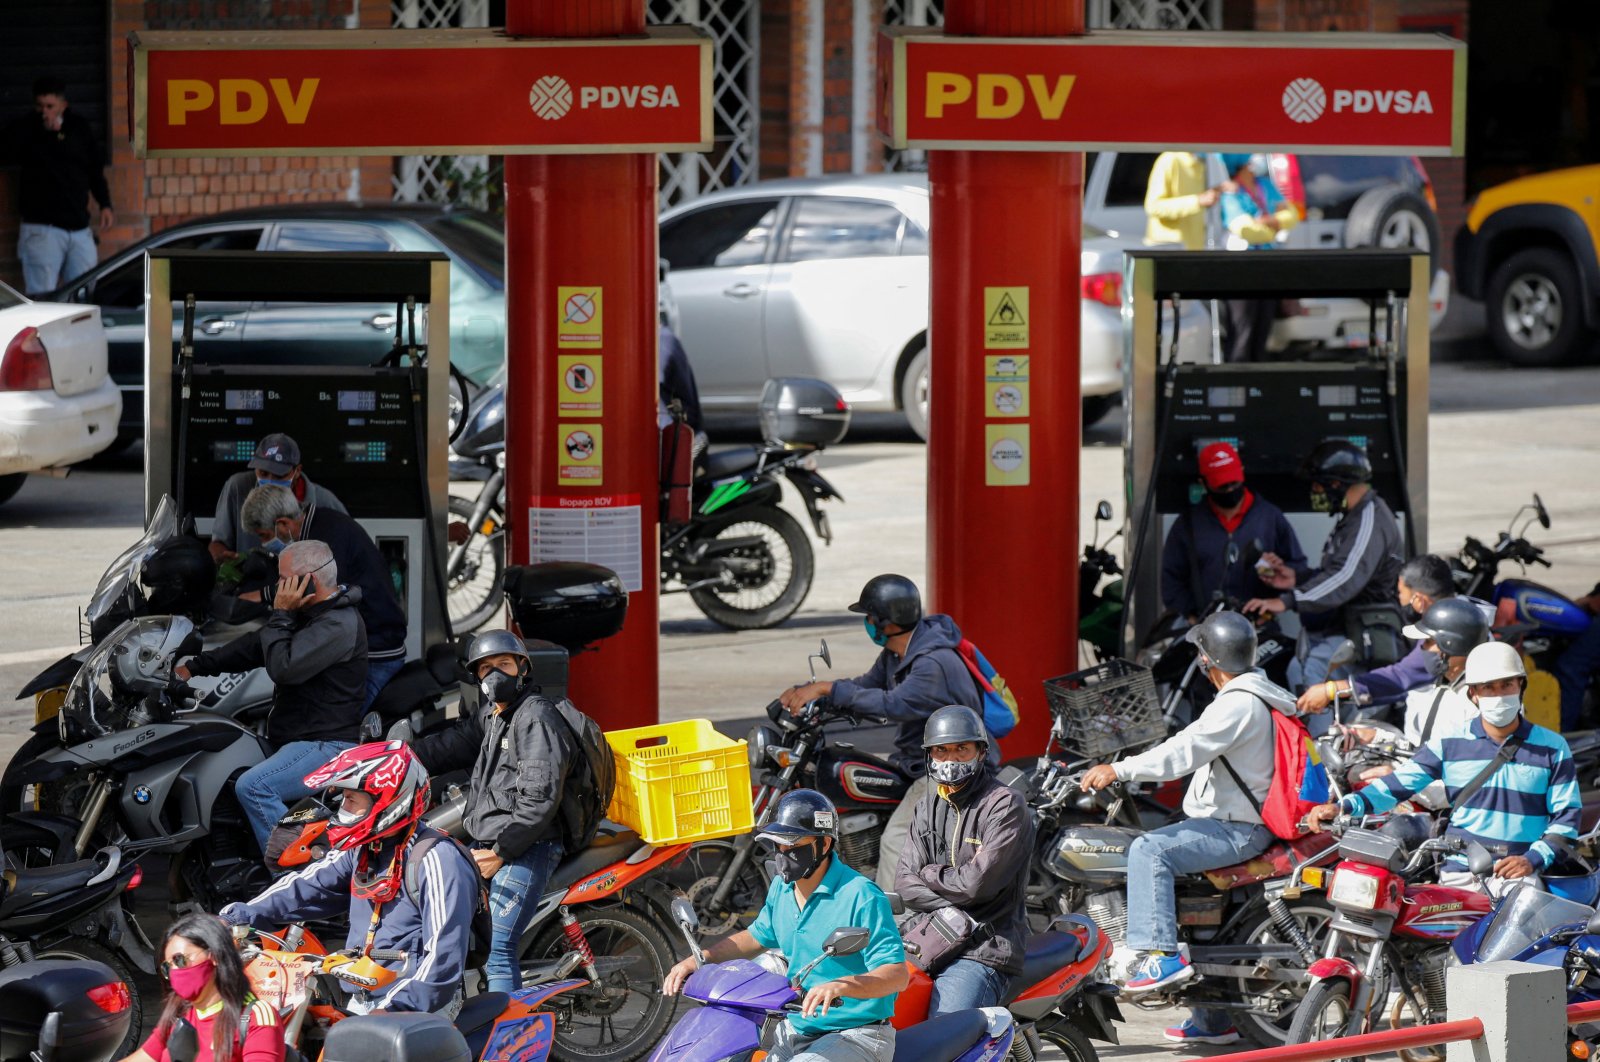 Perusahaan minyak negara Venezuela, PDVSA, menuntut pompa bensin membayar tagihan